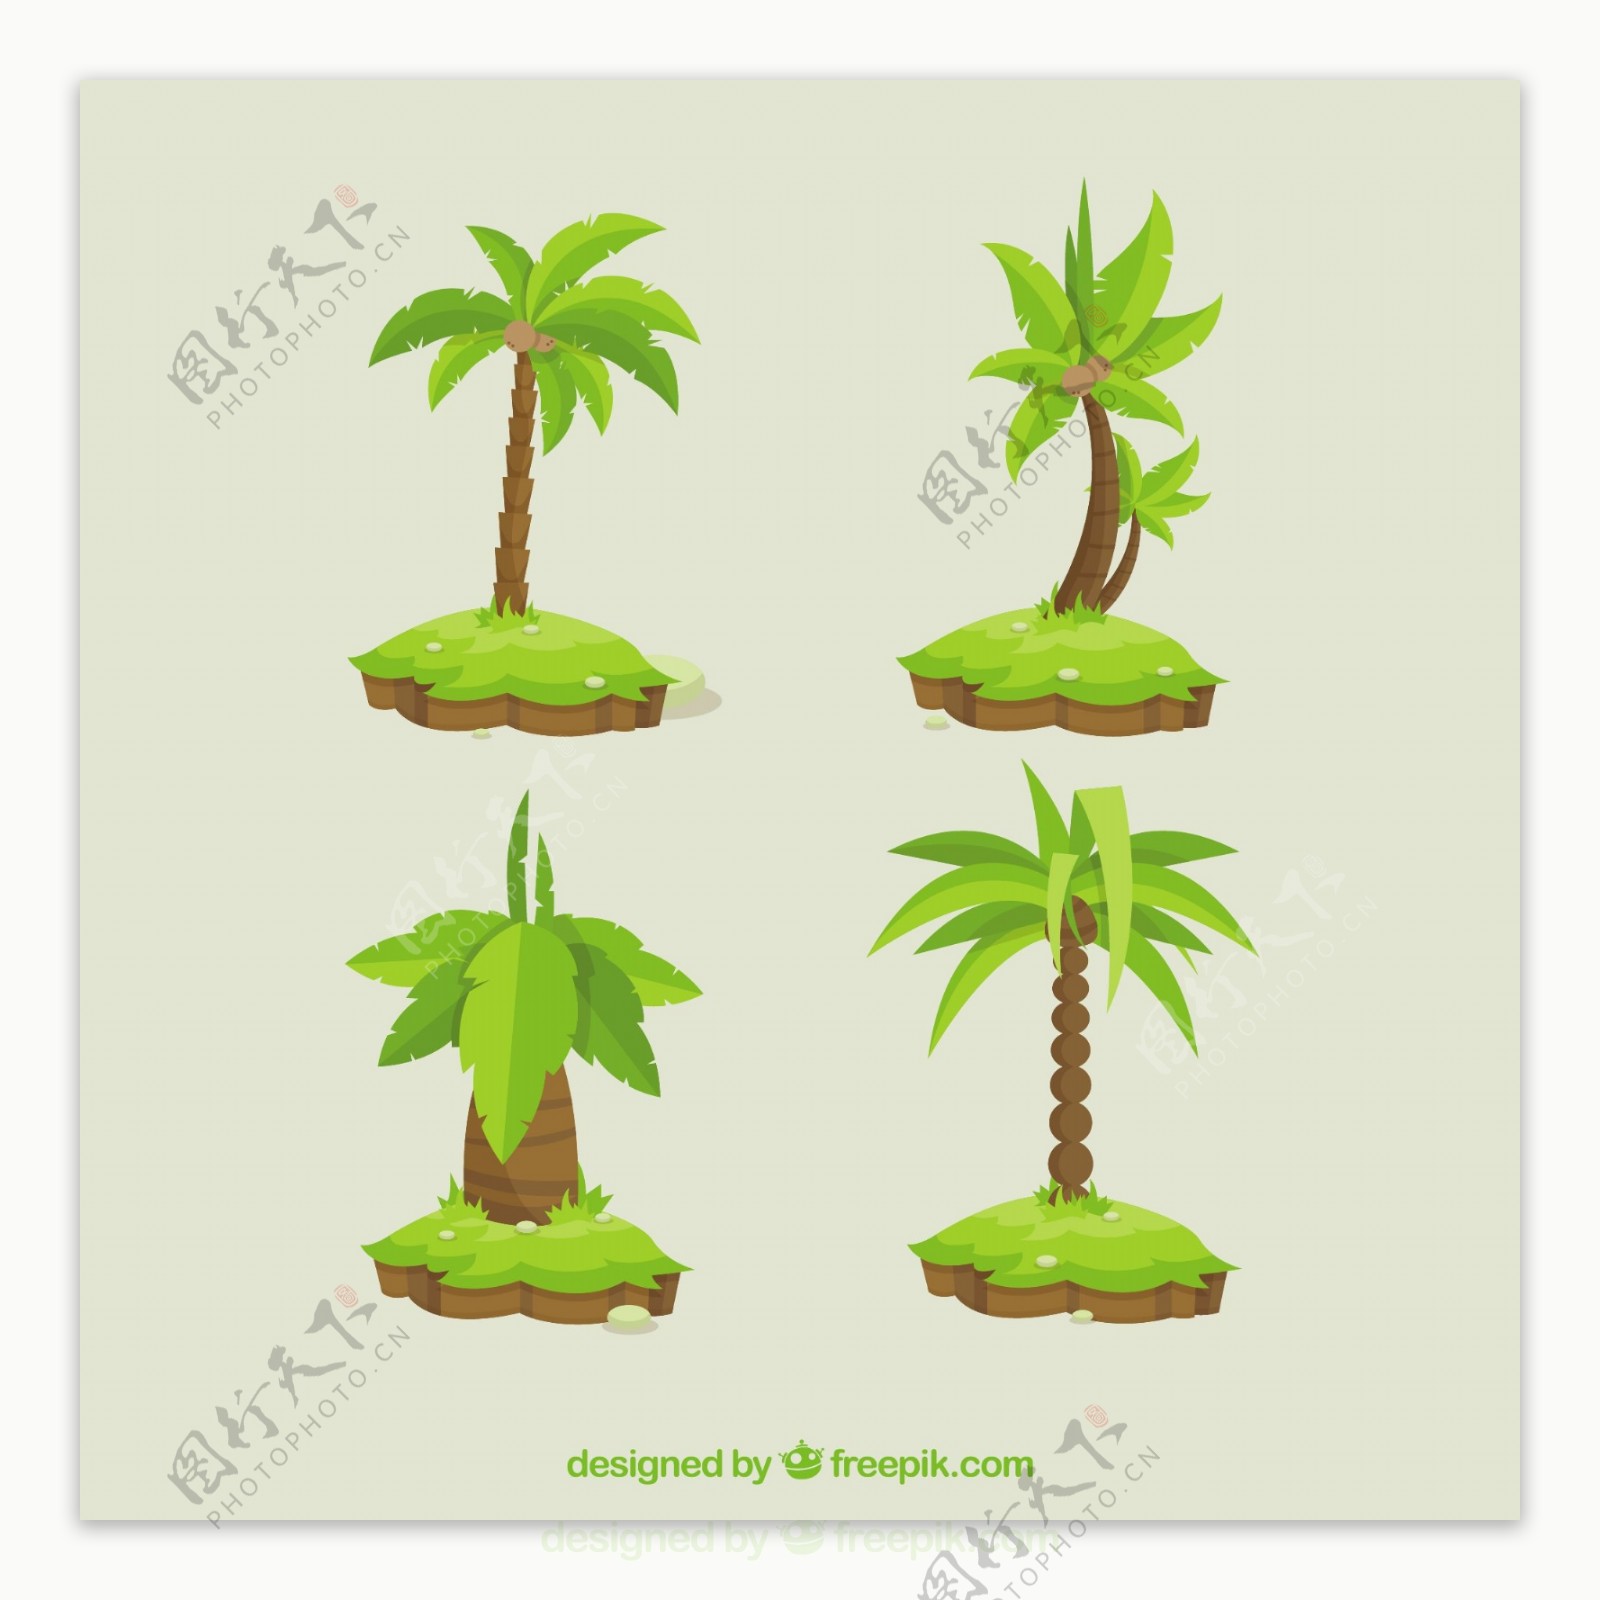 平面设计中的四棵棕榈树